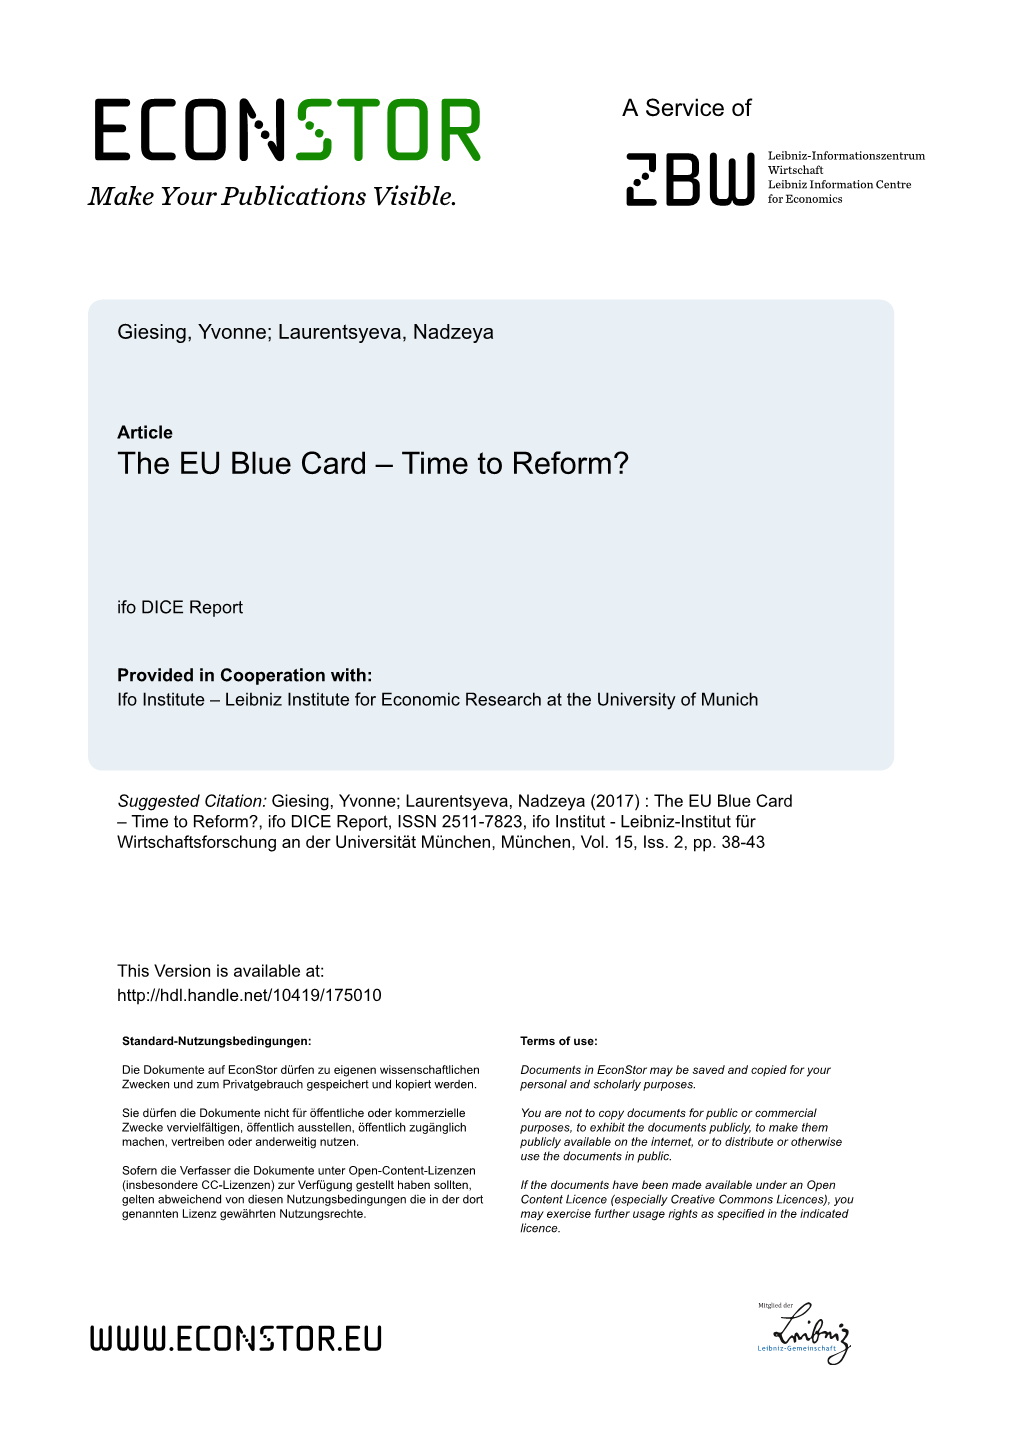 The EU Blue Card – Time to Reform?